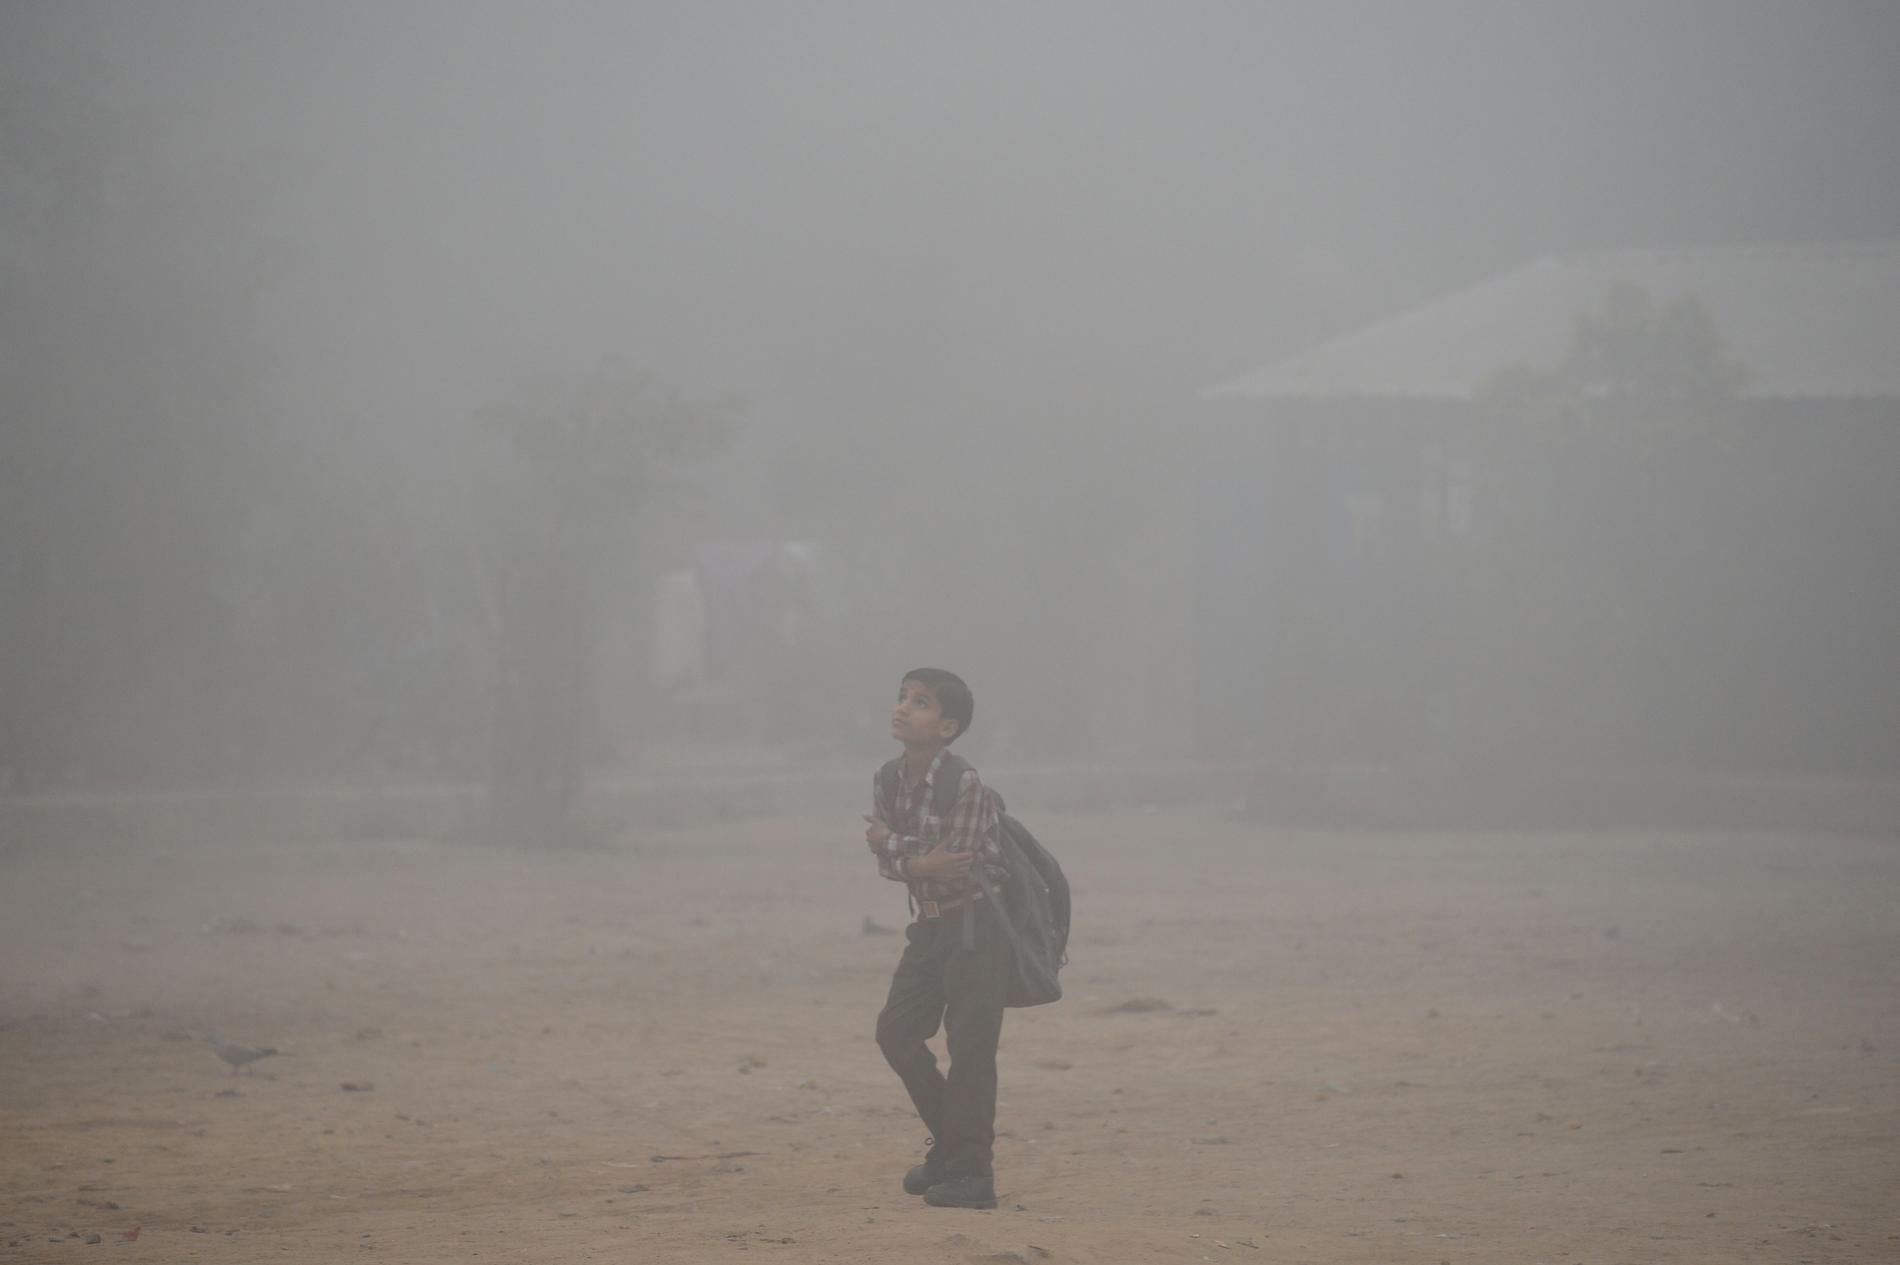 En skolpojke går längs en väg inbäddad i tjock smog. 